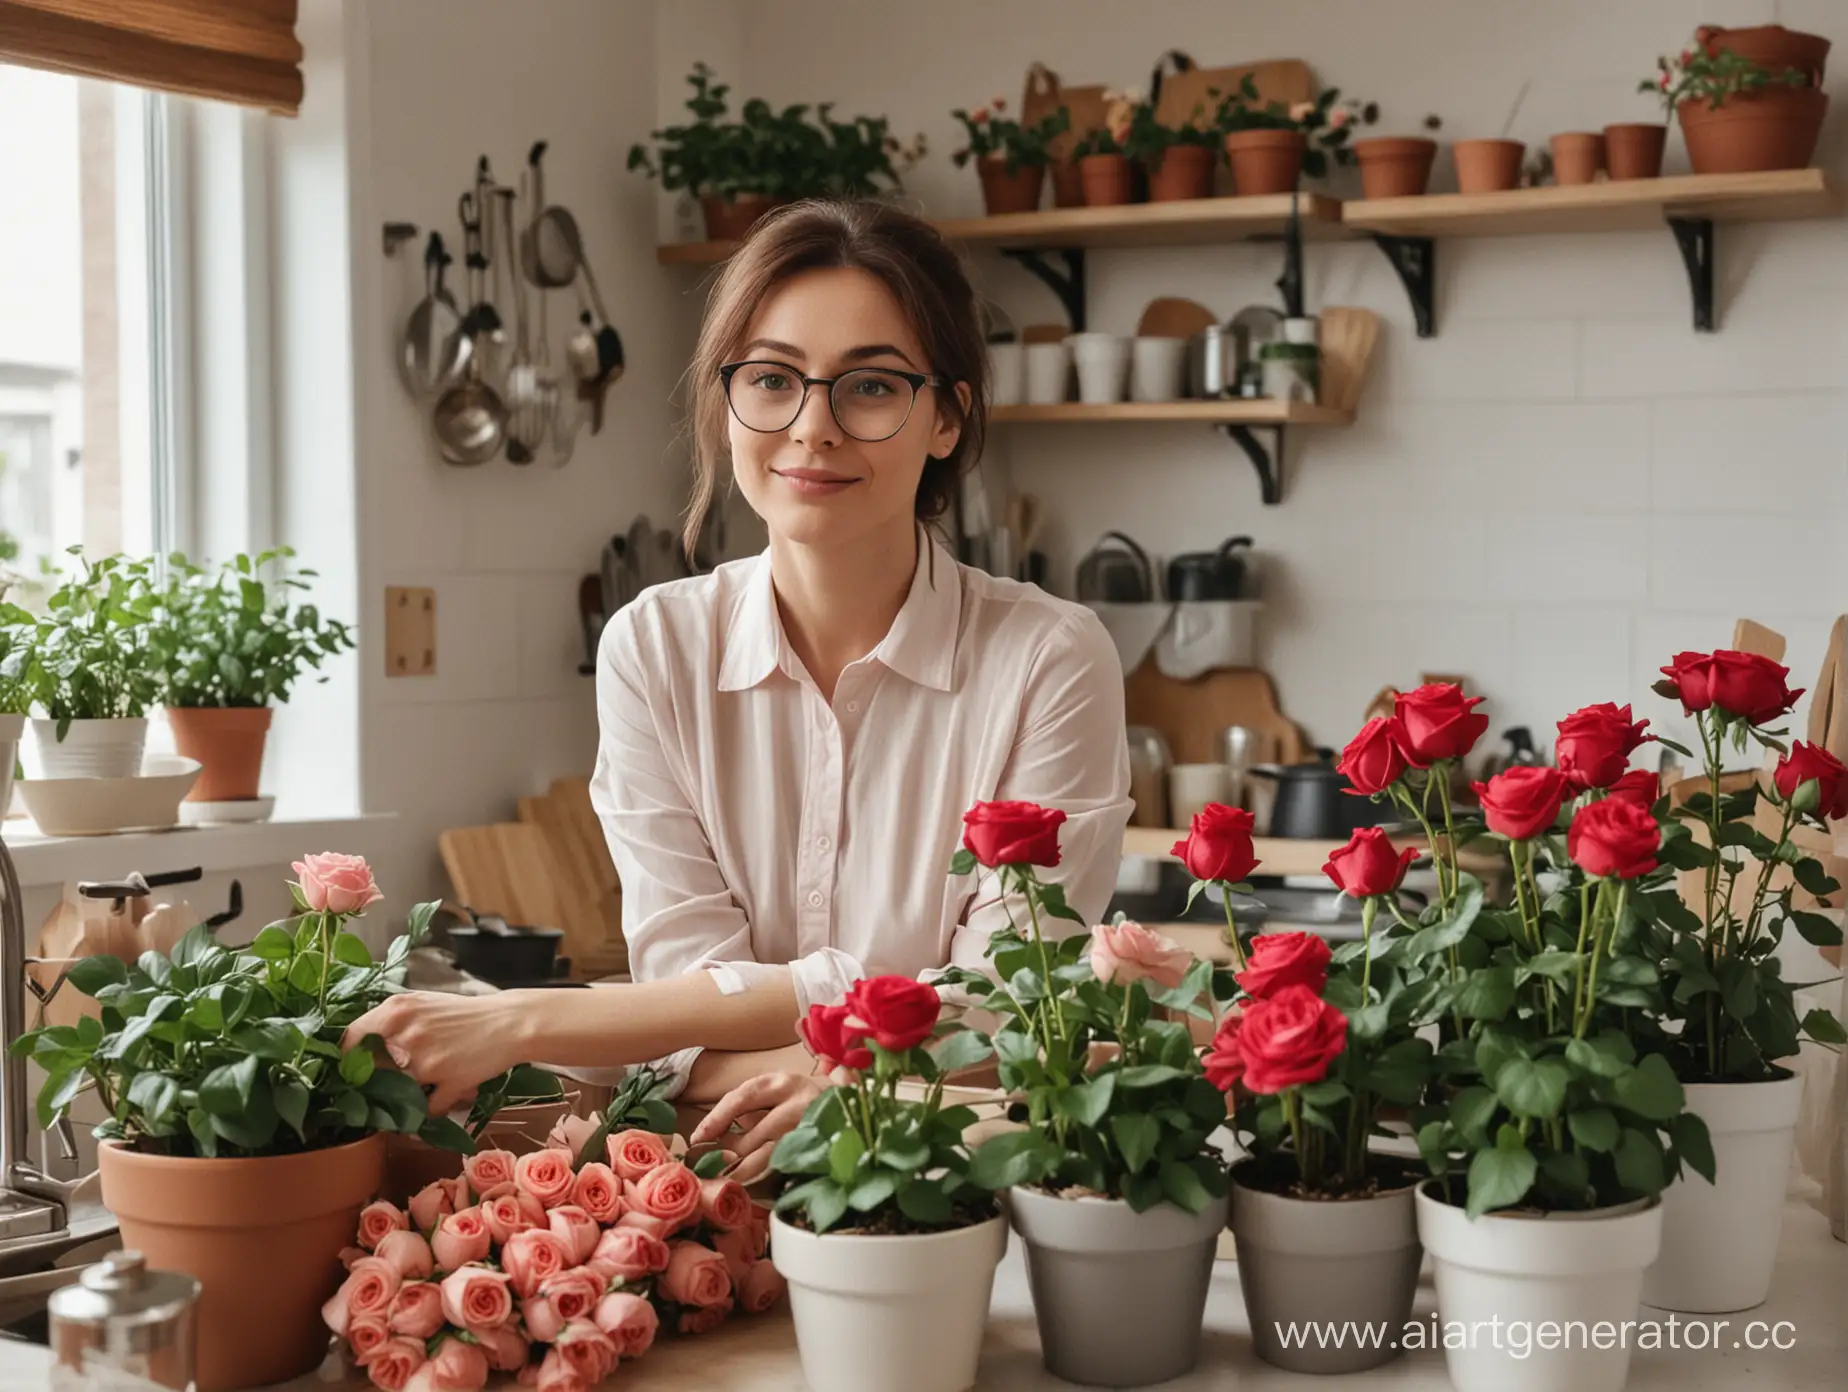 Женщина в очках на кухне среди кучи цветочных горшков с розами